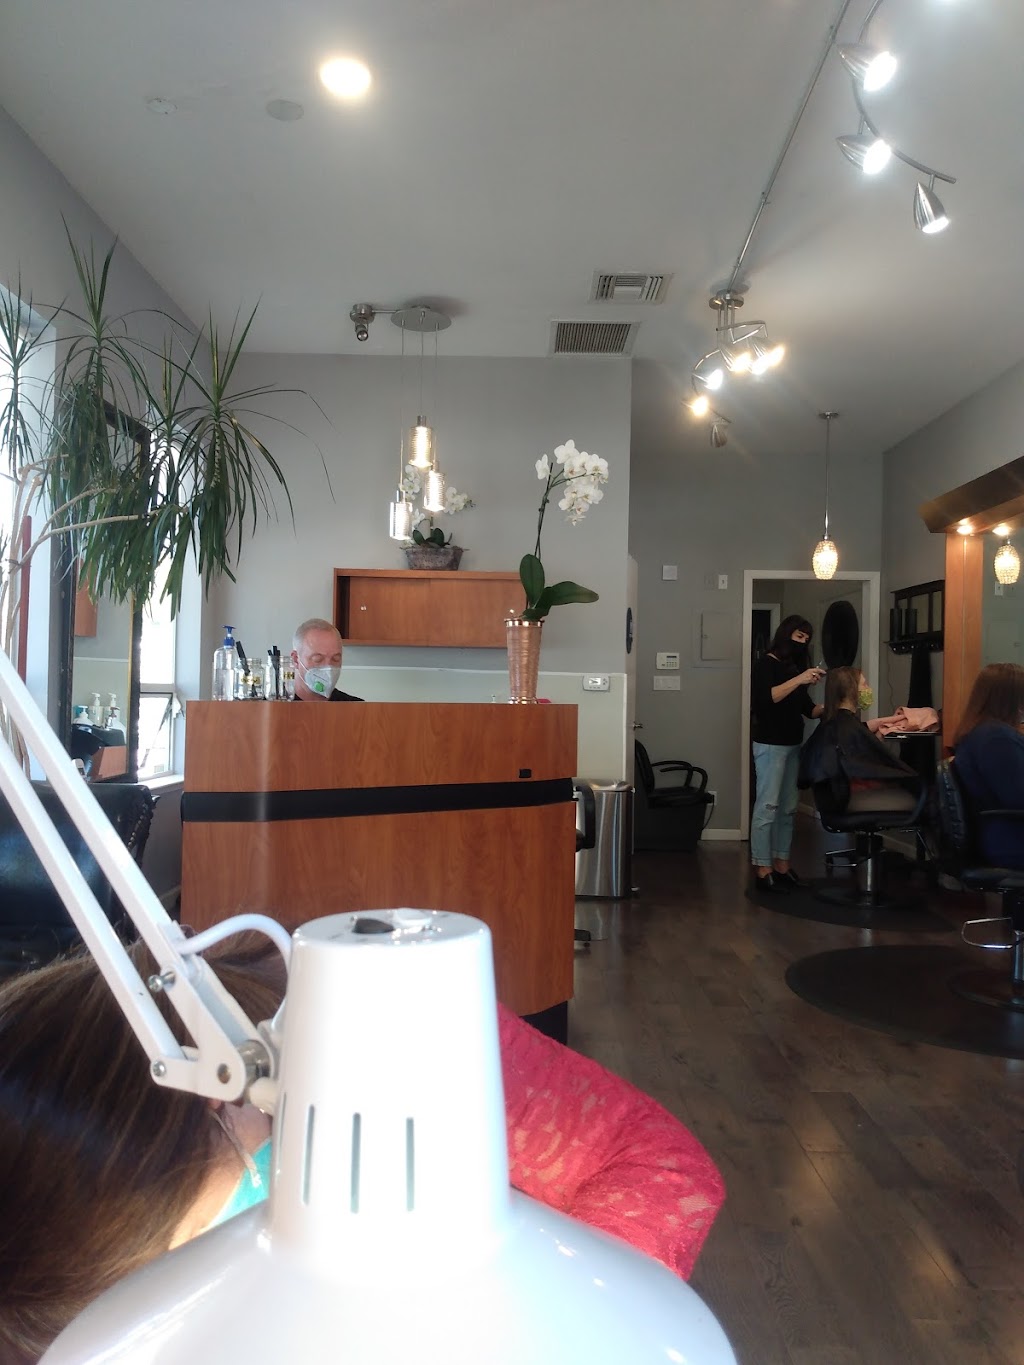 Orinda Hair Studio | 1 Orinda Way #5, Orinda, CA 94563 | Phone: (925) 254-5575